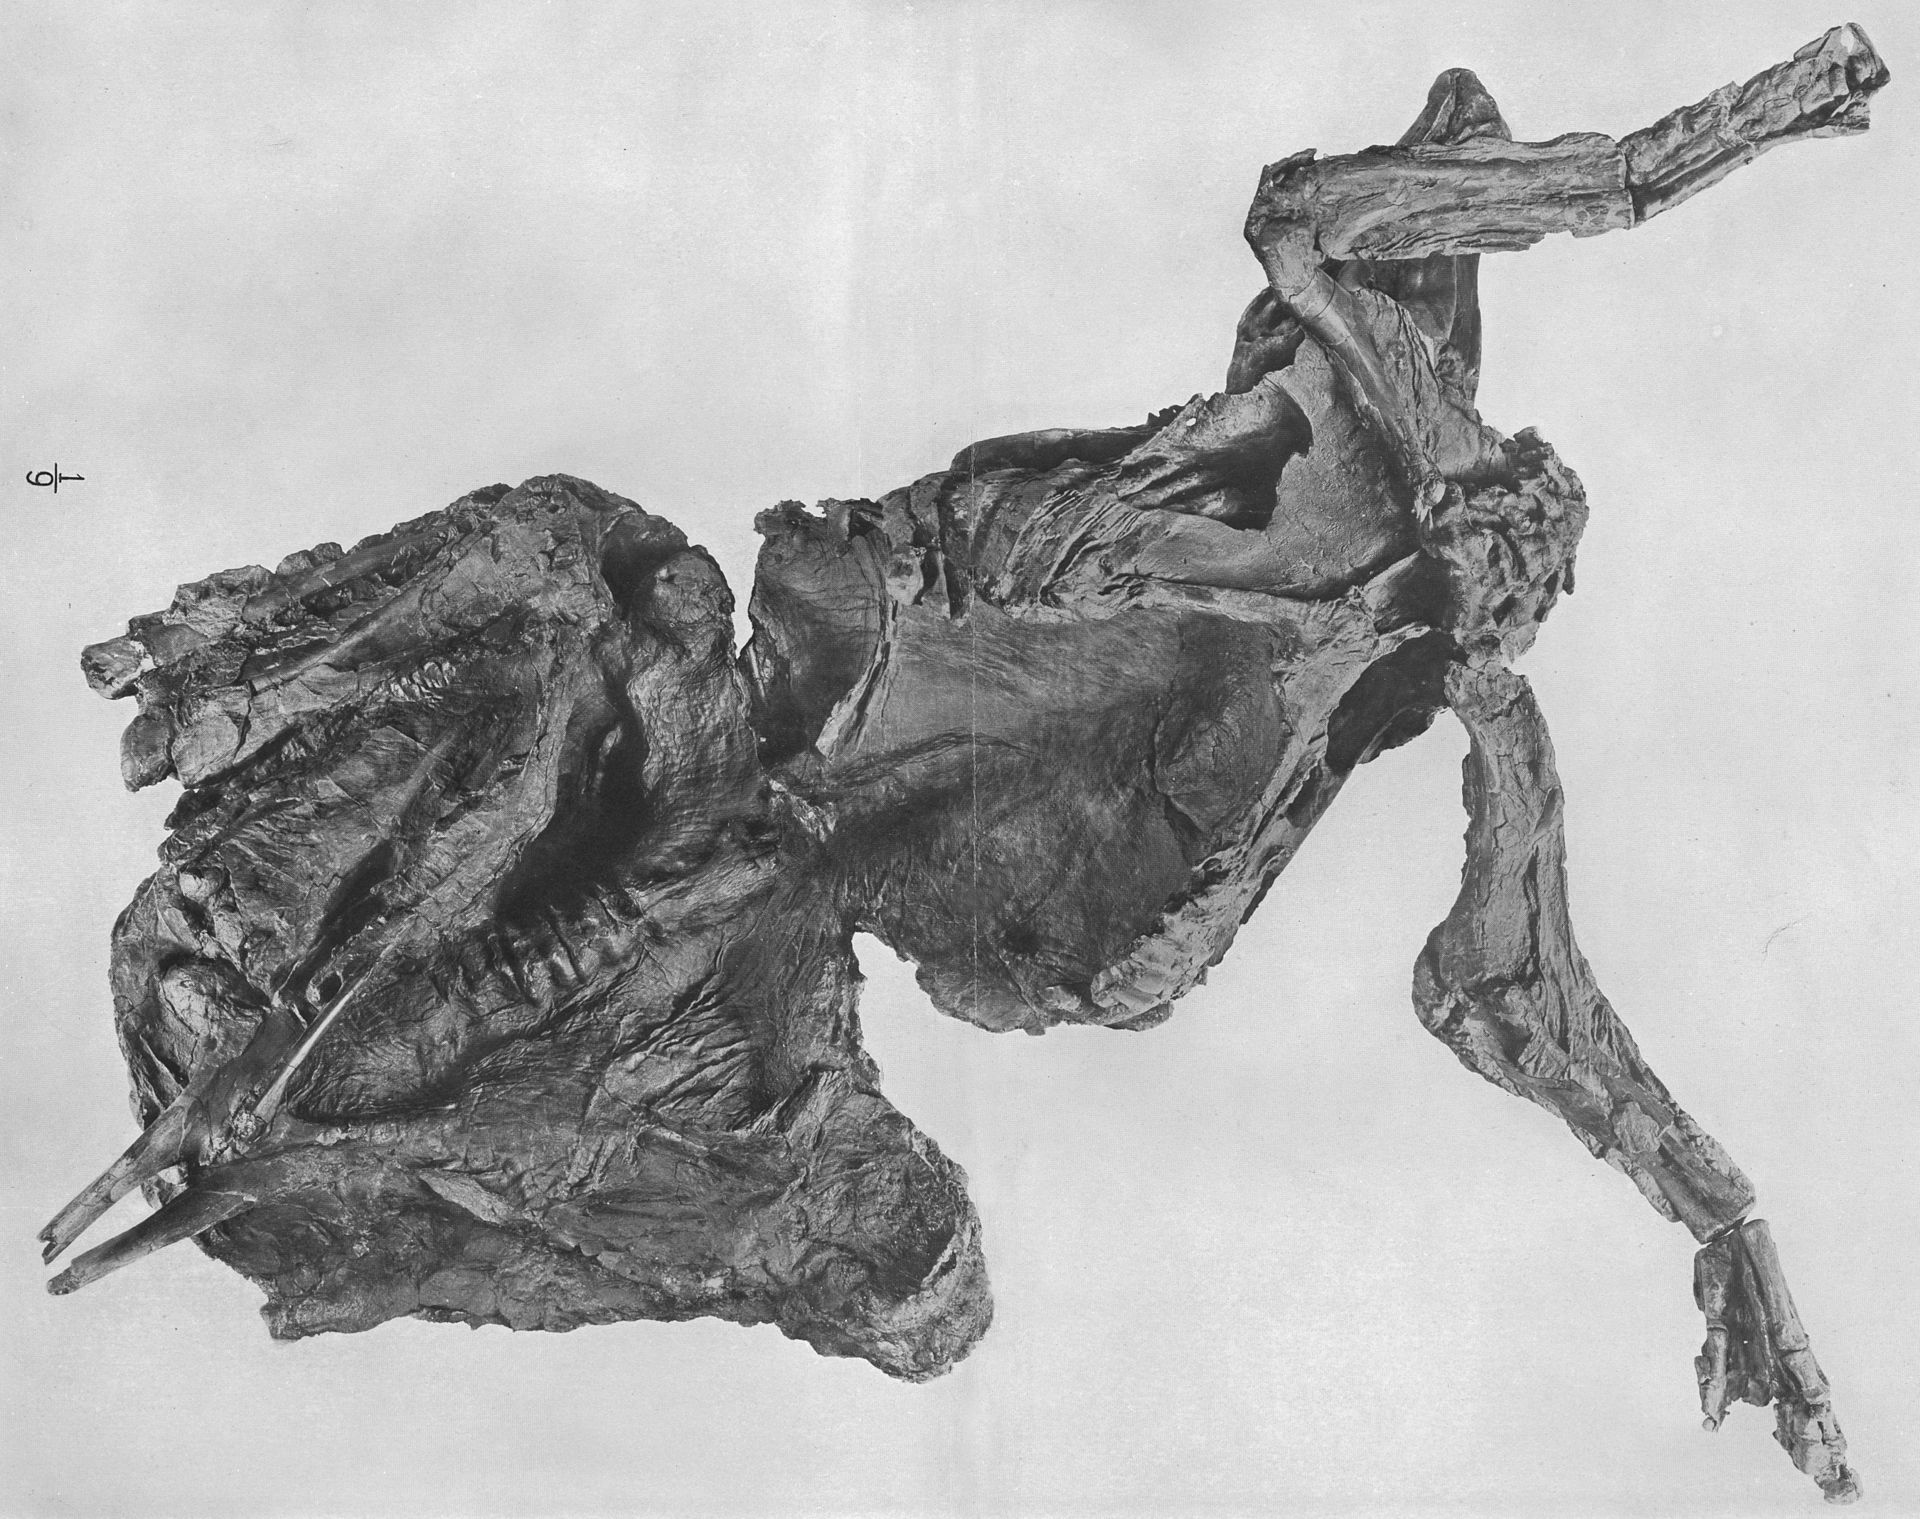 Pohled na slavnou „dinosauří mumii“, tedy skvěle zachovaný exemplář kachnozobého dinosaura druhu Edmontosaurus annectens, objevený Charlesem H. Sternbergem roku 1908 ve Wyomingu. Dnes představuje exponát AMNH 5060 ve sbírkách Amerického přírodovědeck